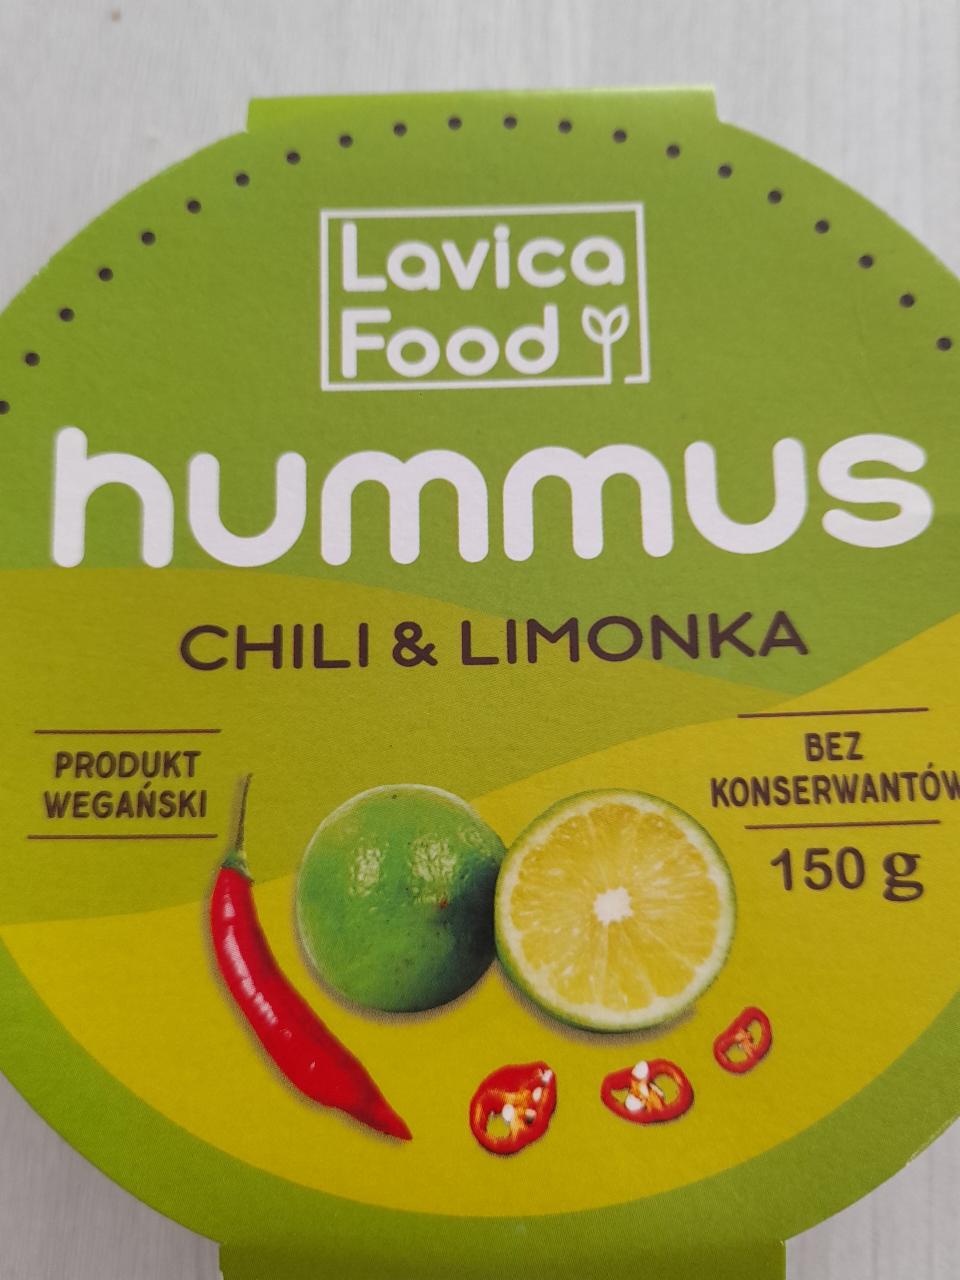 Zdjęcia - hummus chili&limonka lavica food